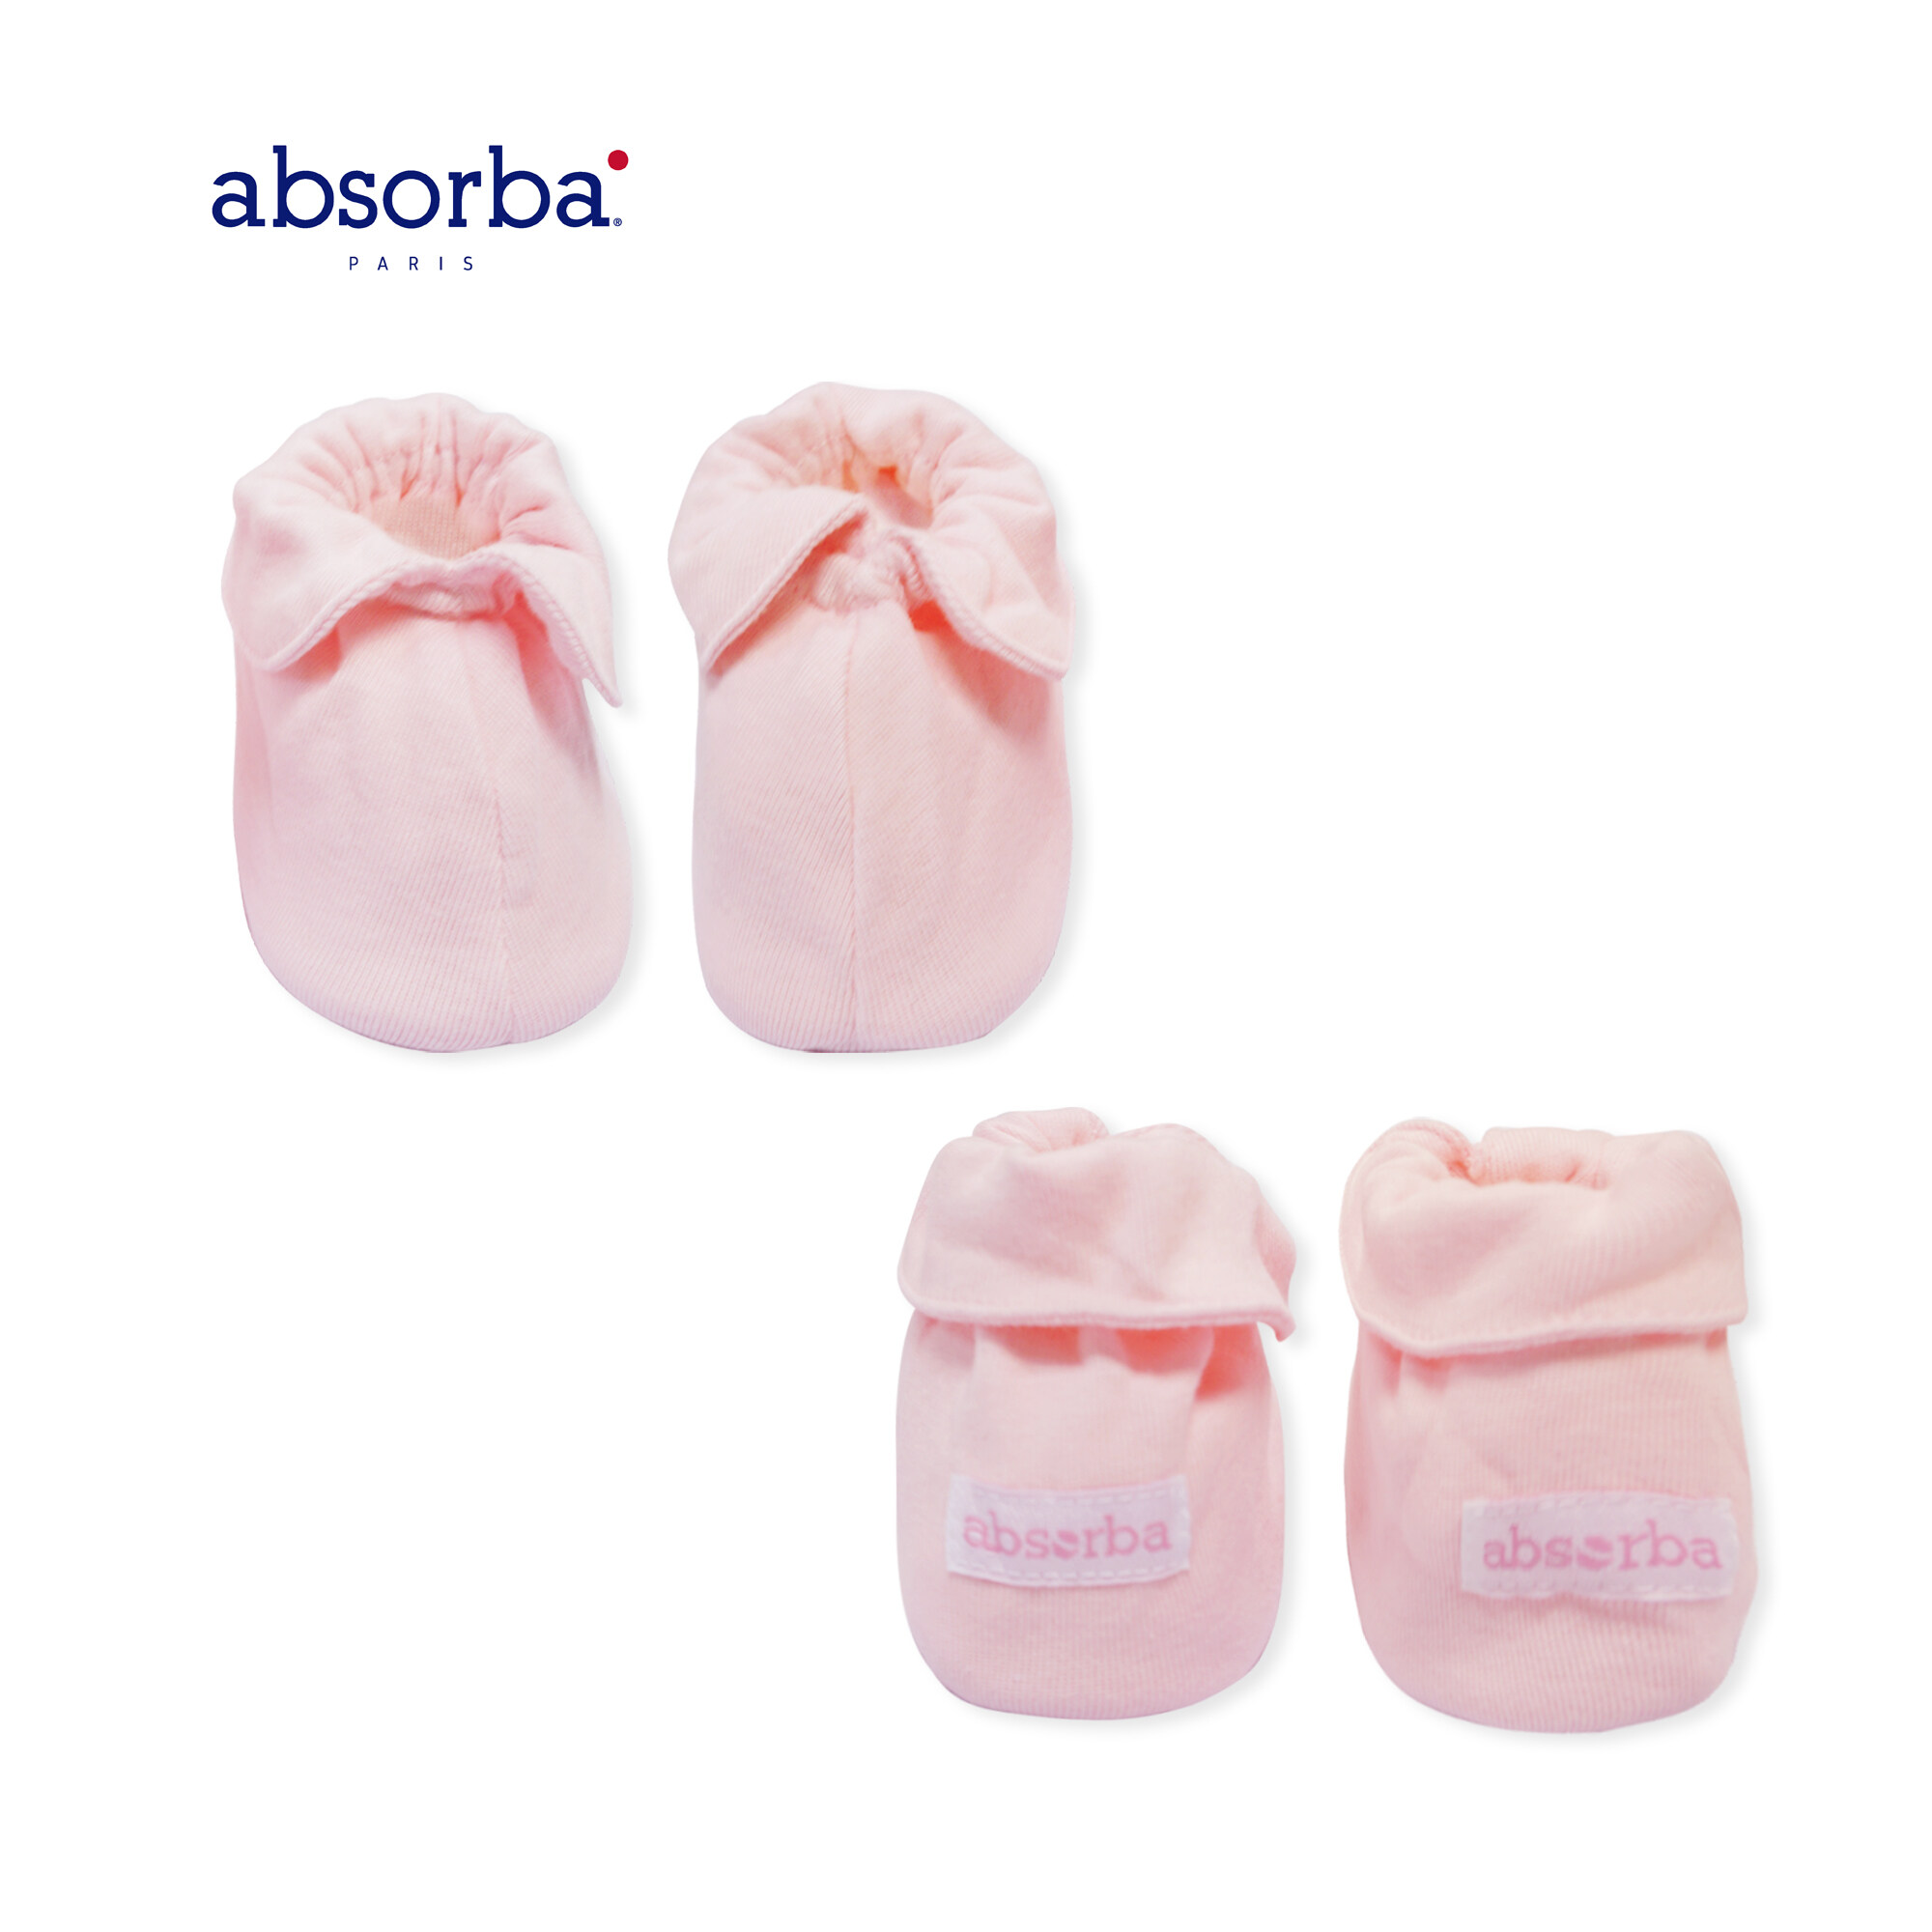 absorba(แอ็บซอร์บา)ถุงเท้าเด็กอ่อน เคลือบคอลลาเจน นุ่ม สวมใส่สบาย ระบายอากาศได้ดี สำหรับเด็กแรกเกิดขึ้นไป มีให้เลือก 3 สี แพ็ค 1 คู่ -R21SRUAO01